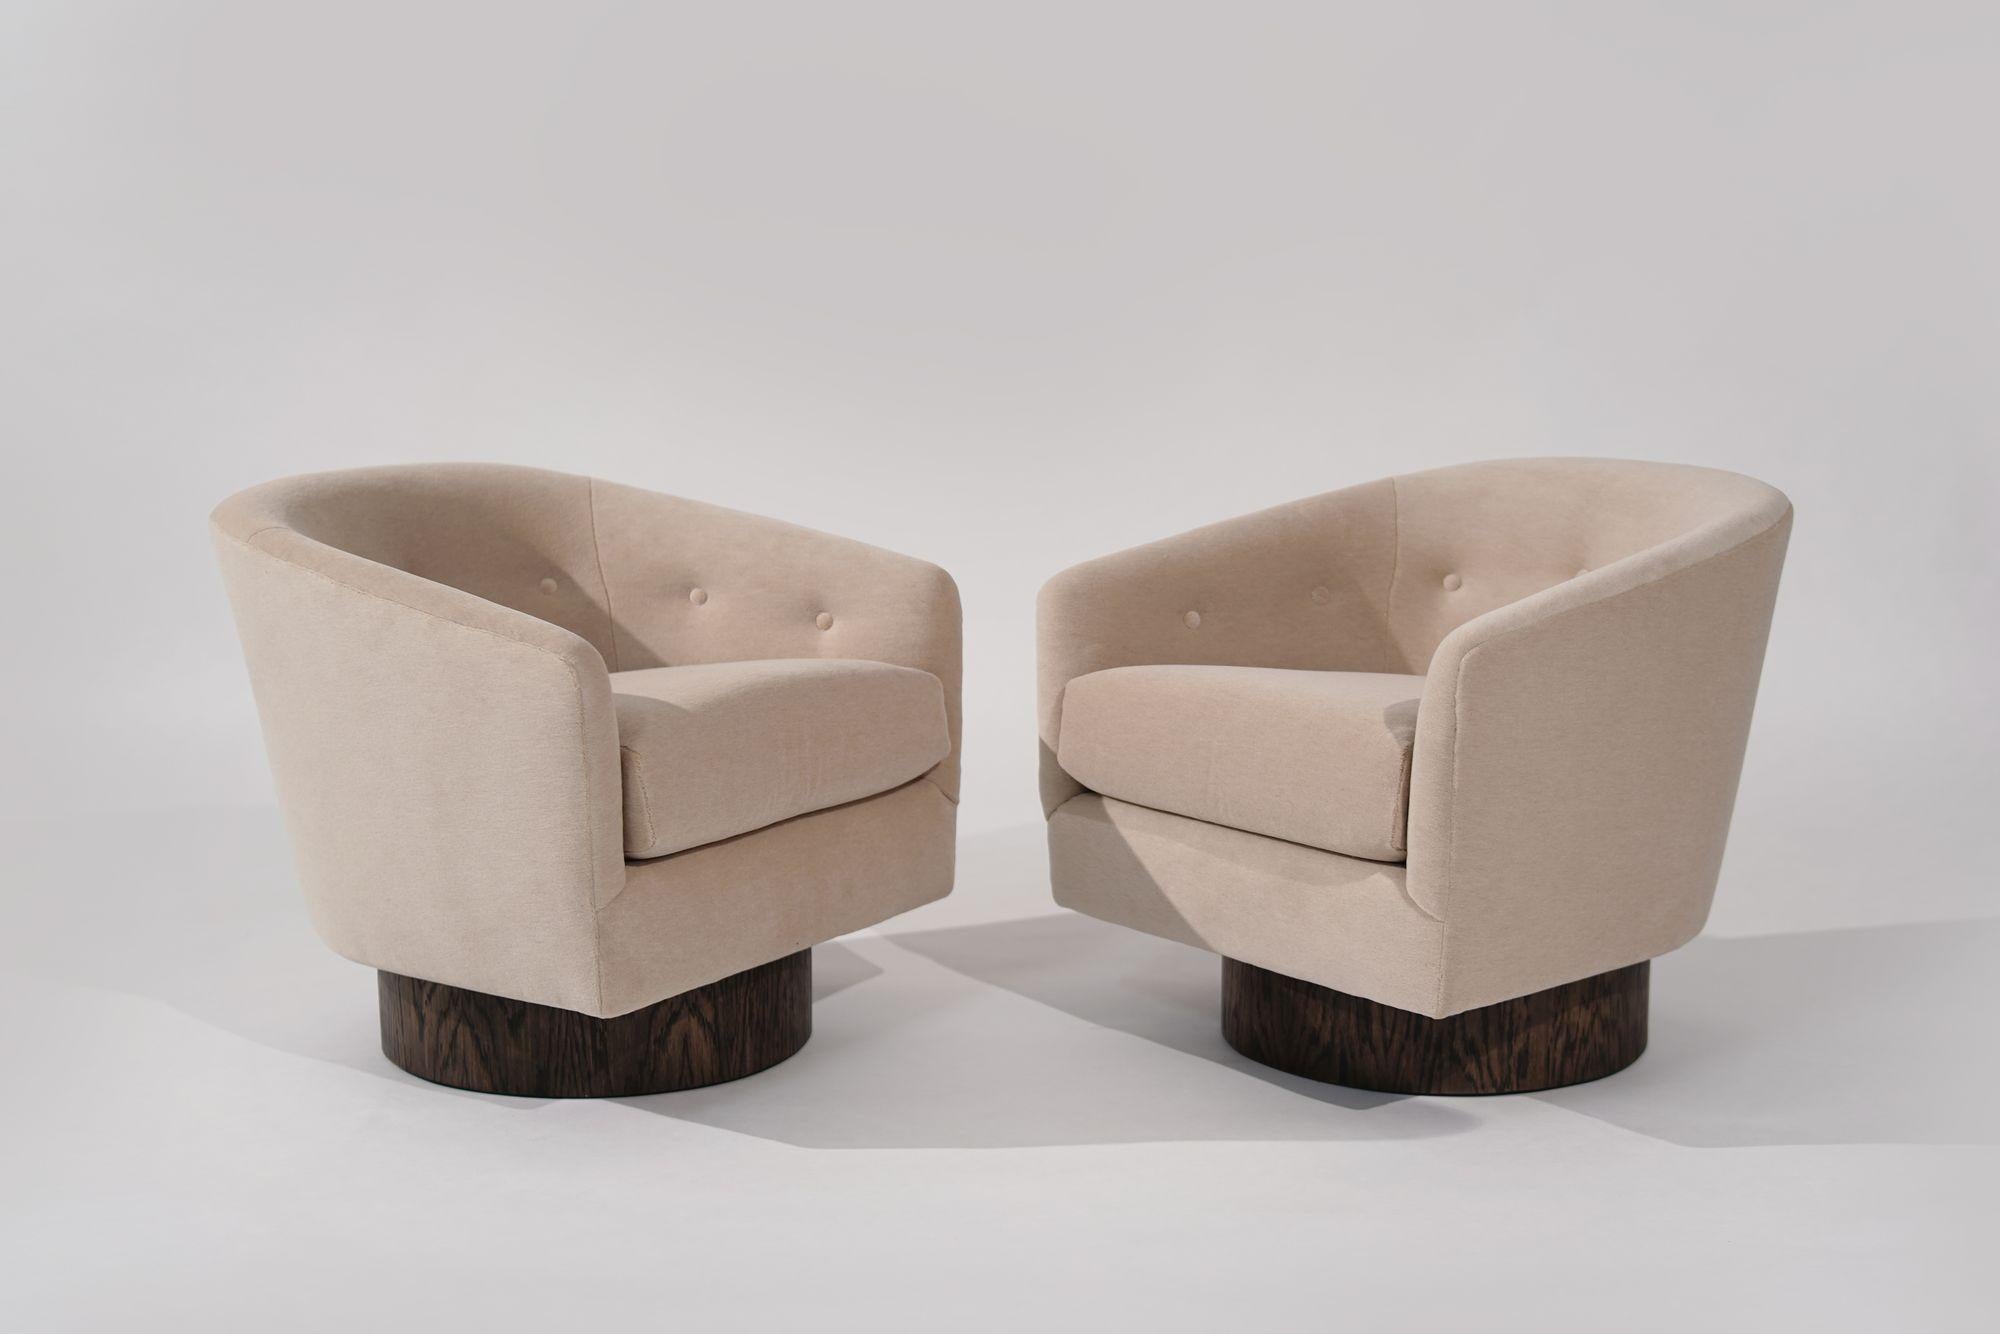 Élevez votre espace avec cet ensemble de chaises pivotantes Milo Baughman des années 1970. Entièrement restaurées et retapissées en mohair naturel, ces chaises respirent le luxe. La base en chêne ajoute une touche de chaleur et de sophistication.